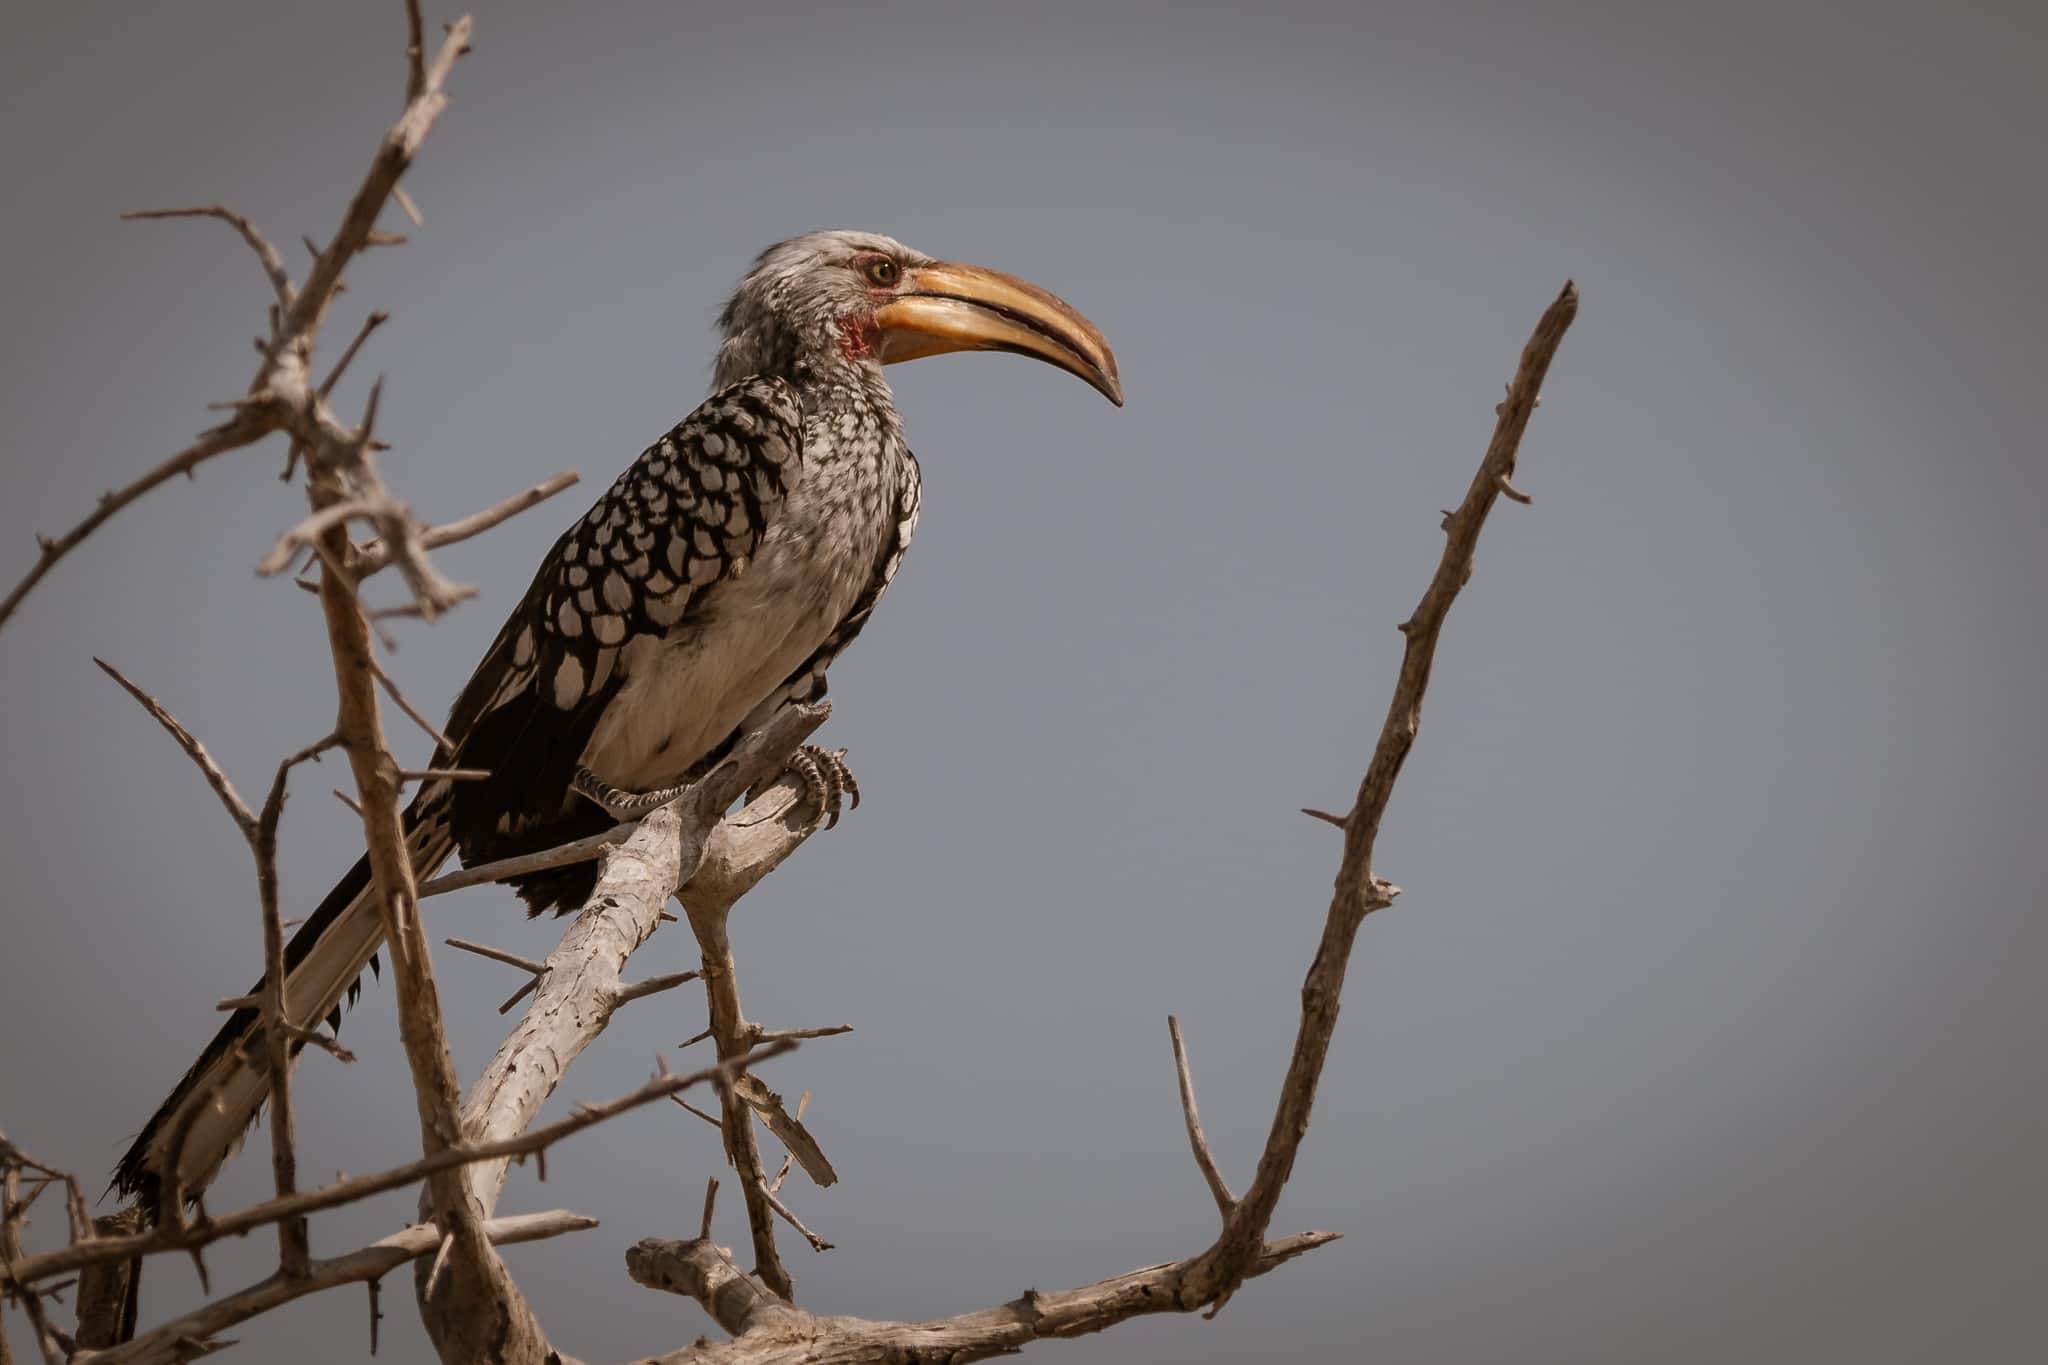 Vögel in Namibia